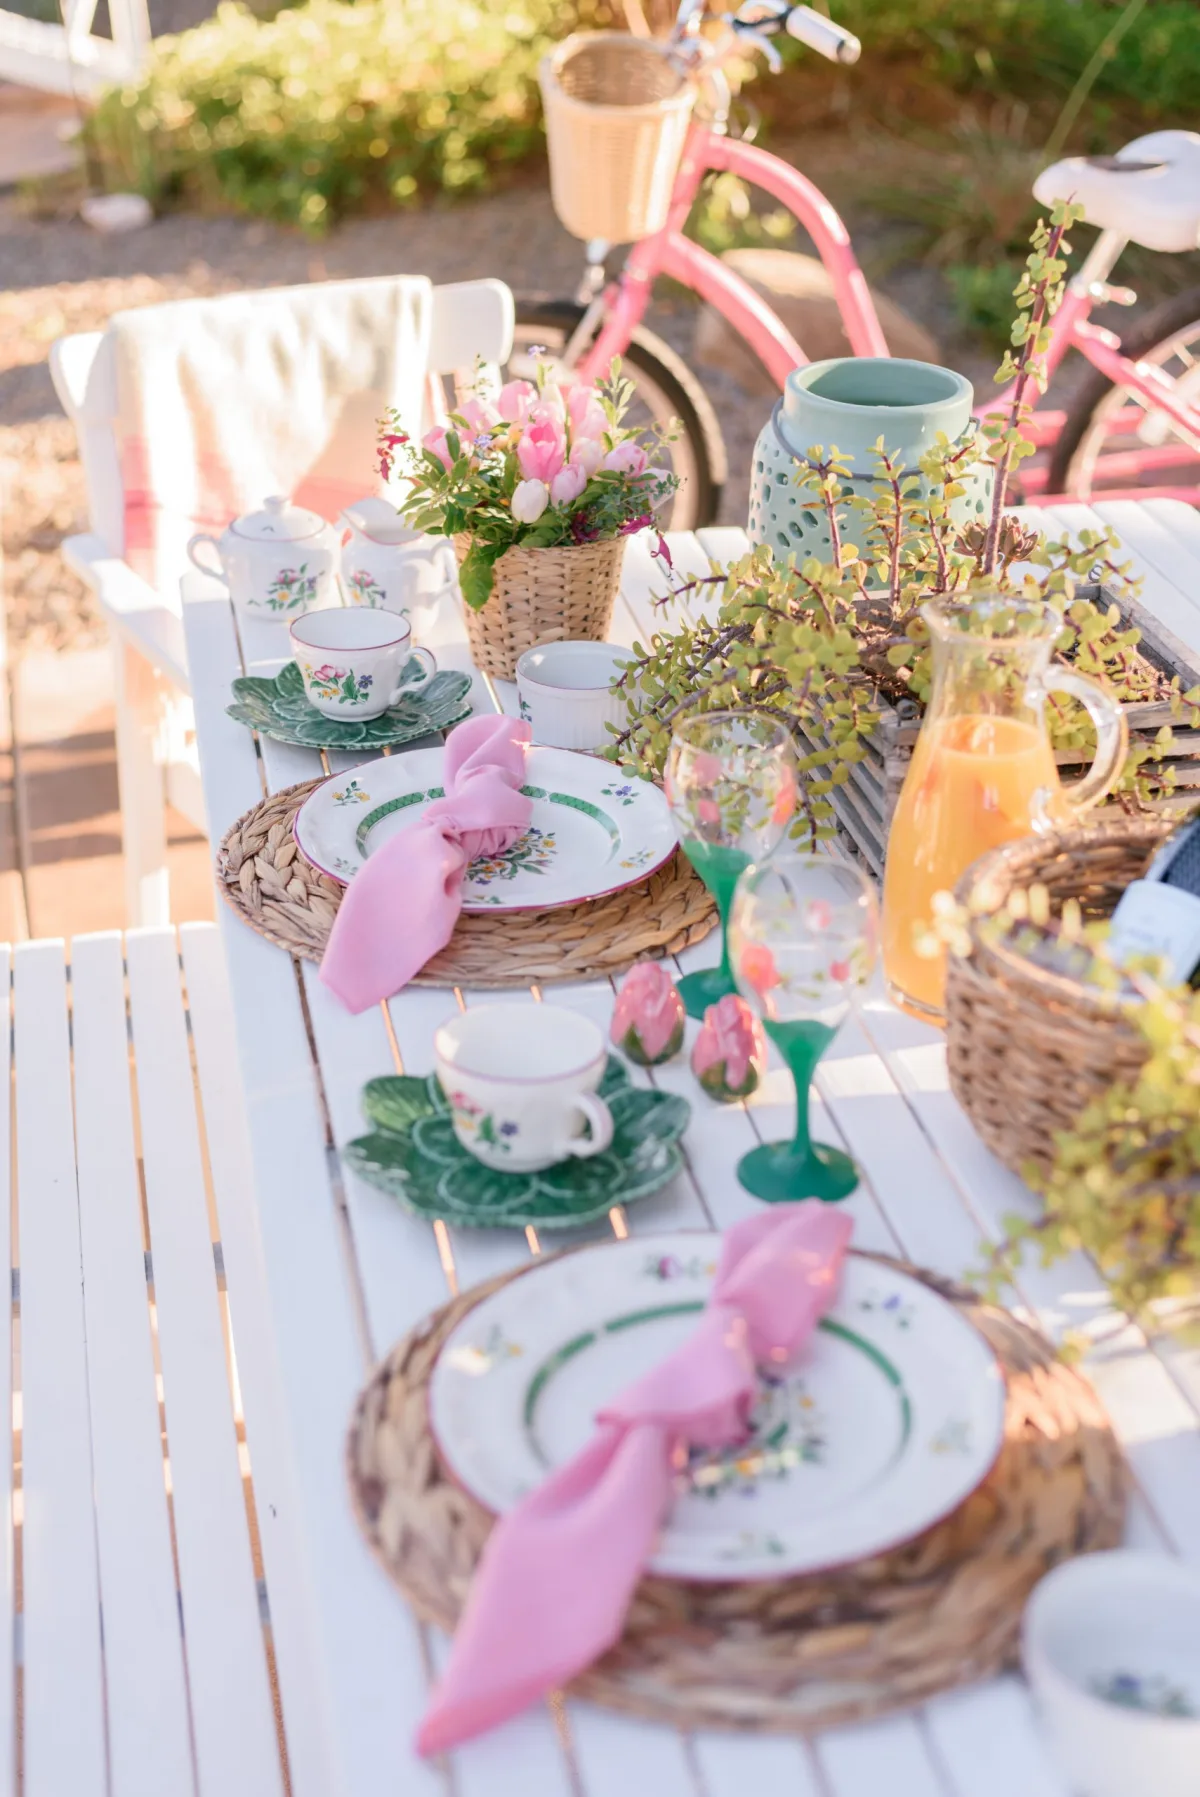 decoration piur pques style champetre coloré chemin de tanle fleuri serviettes rose vaisselle champetre